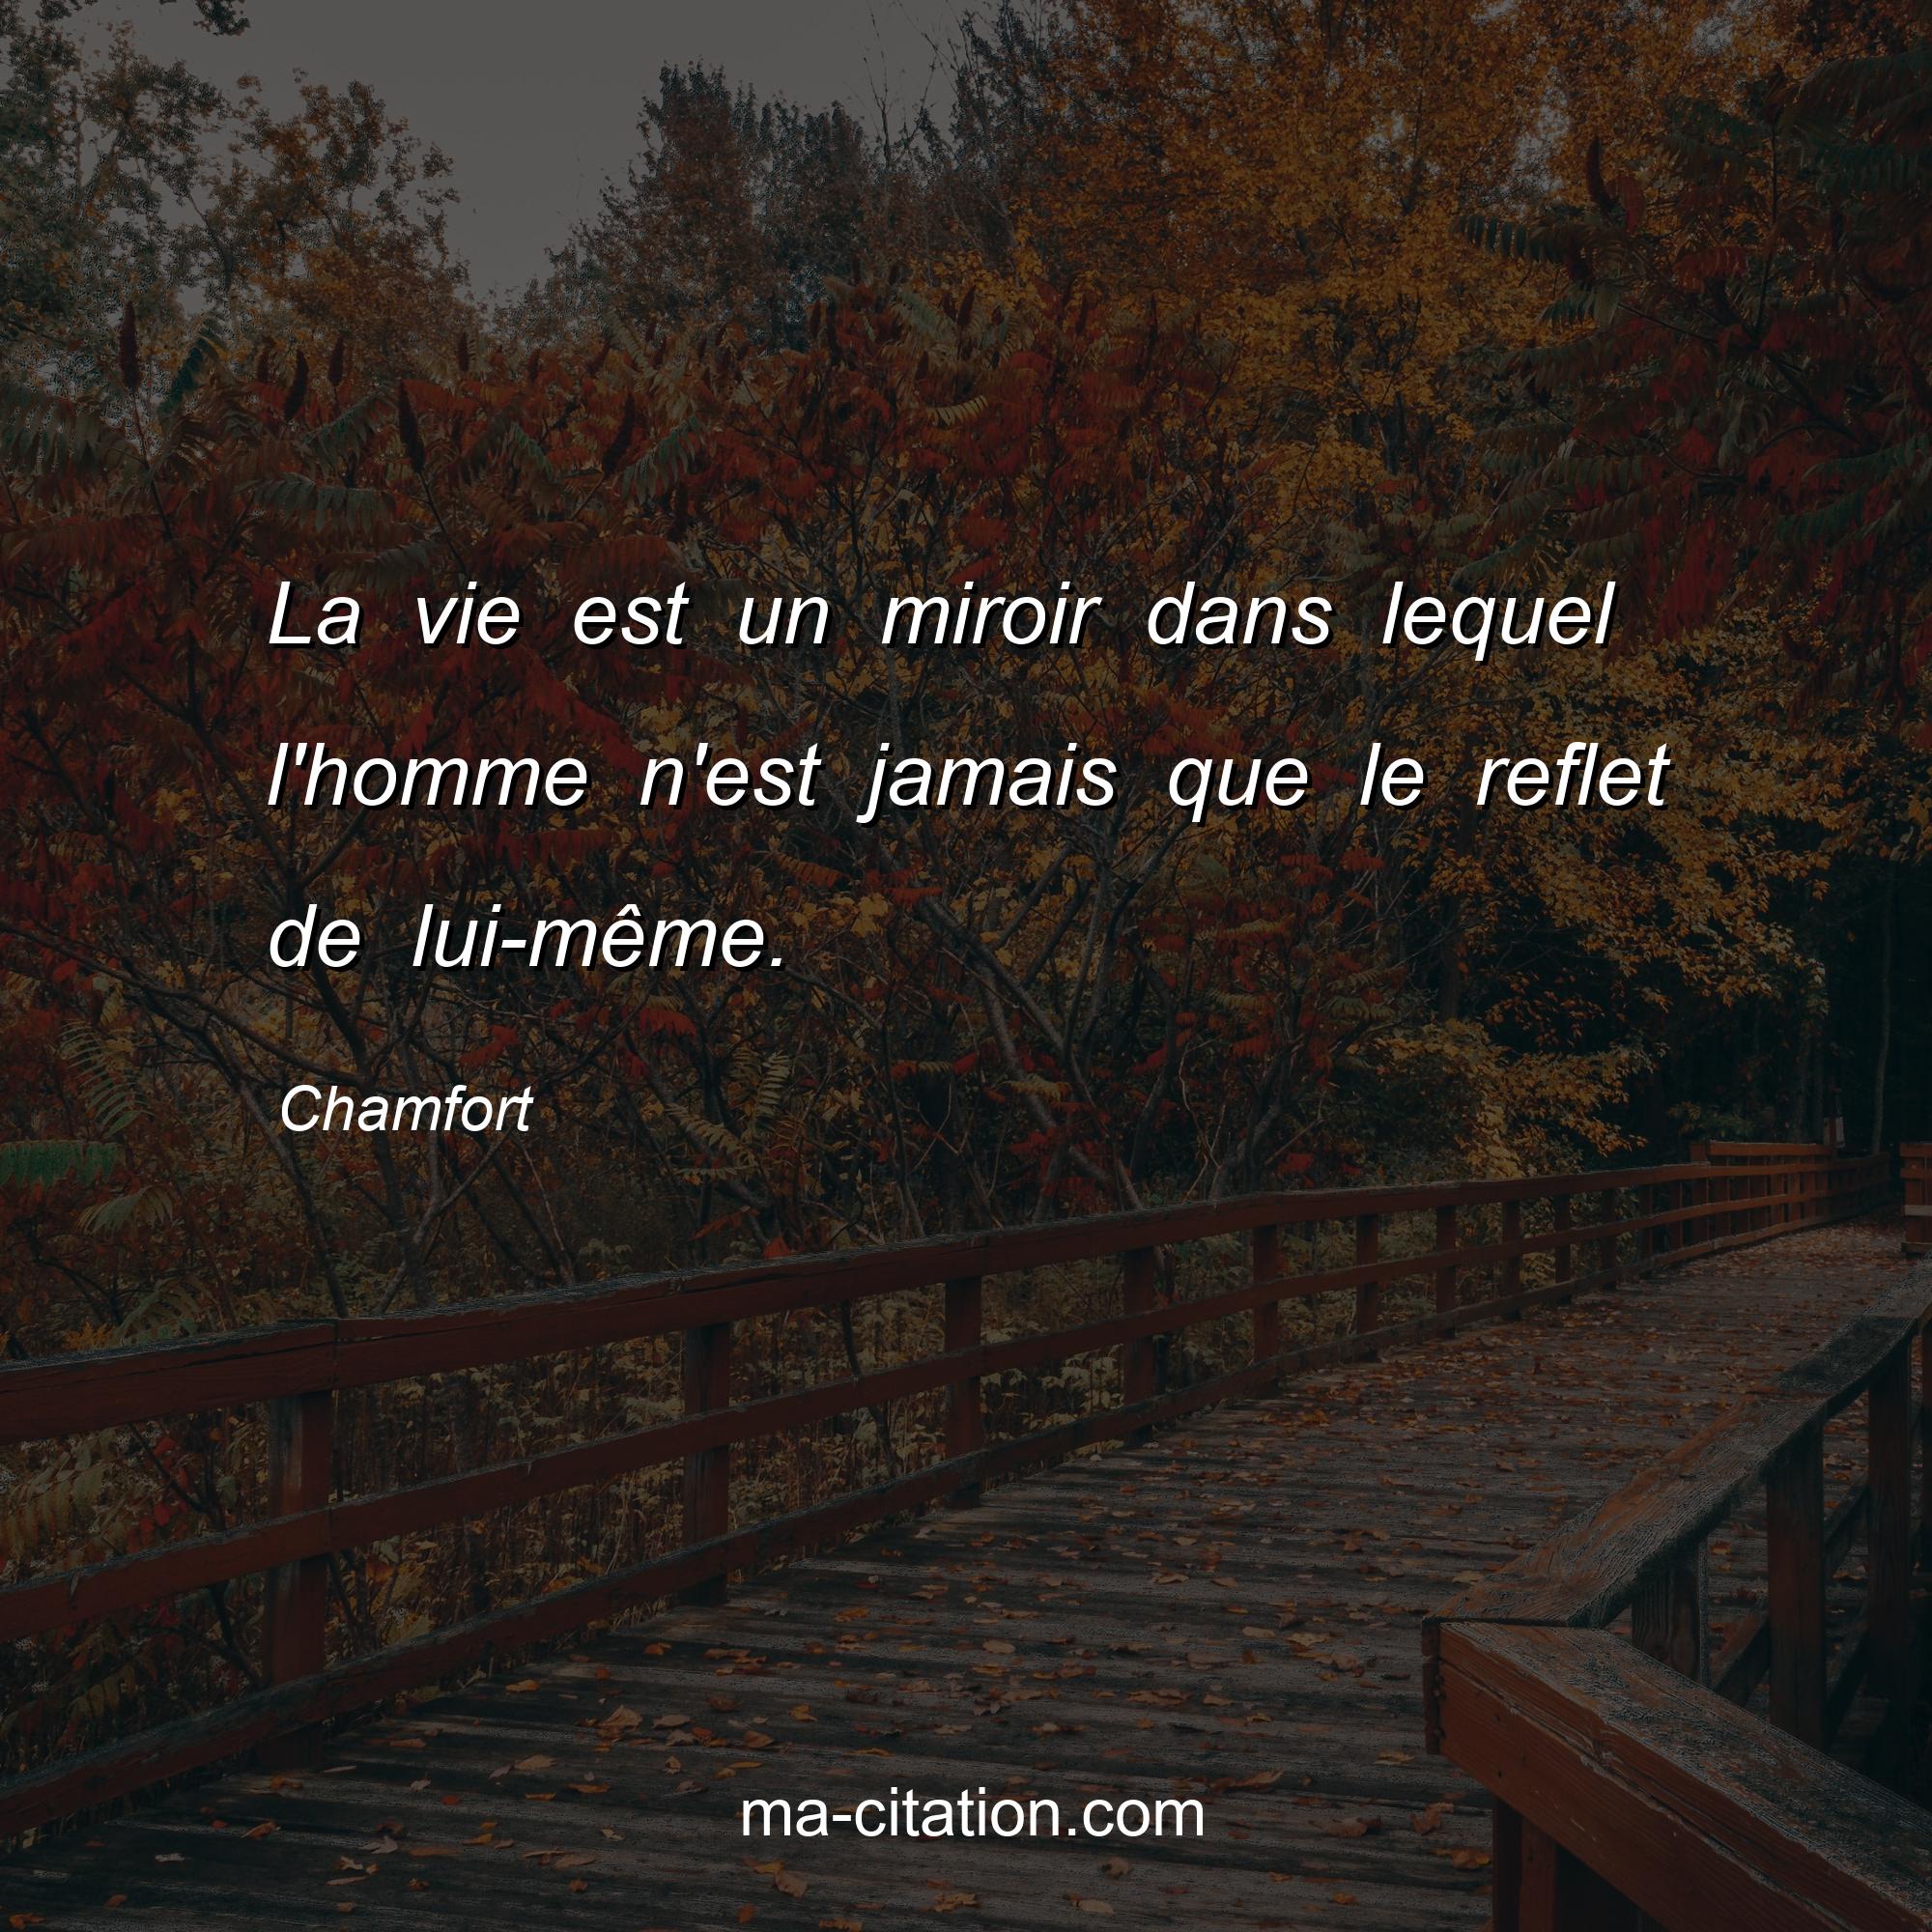 Chamfort : La vie est un miroir dans lequel l'homme n'est jamais que le reflet de lui-même.